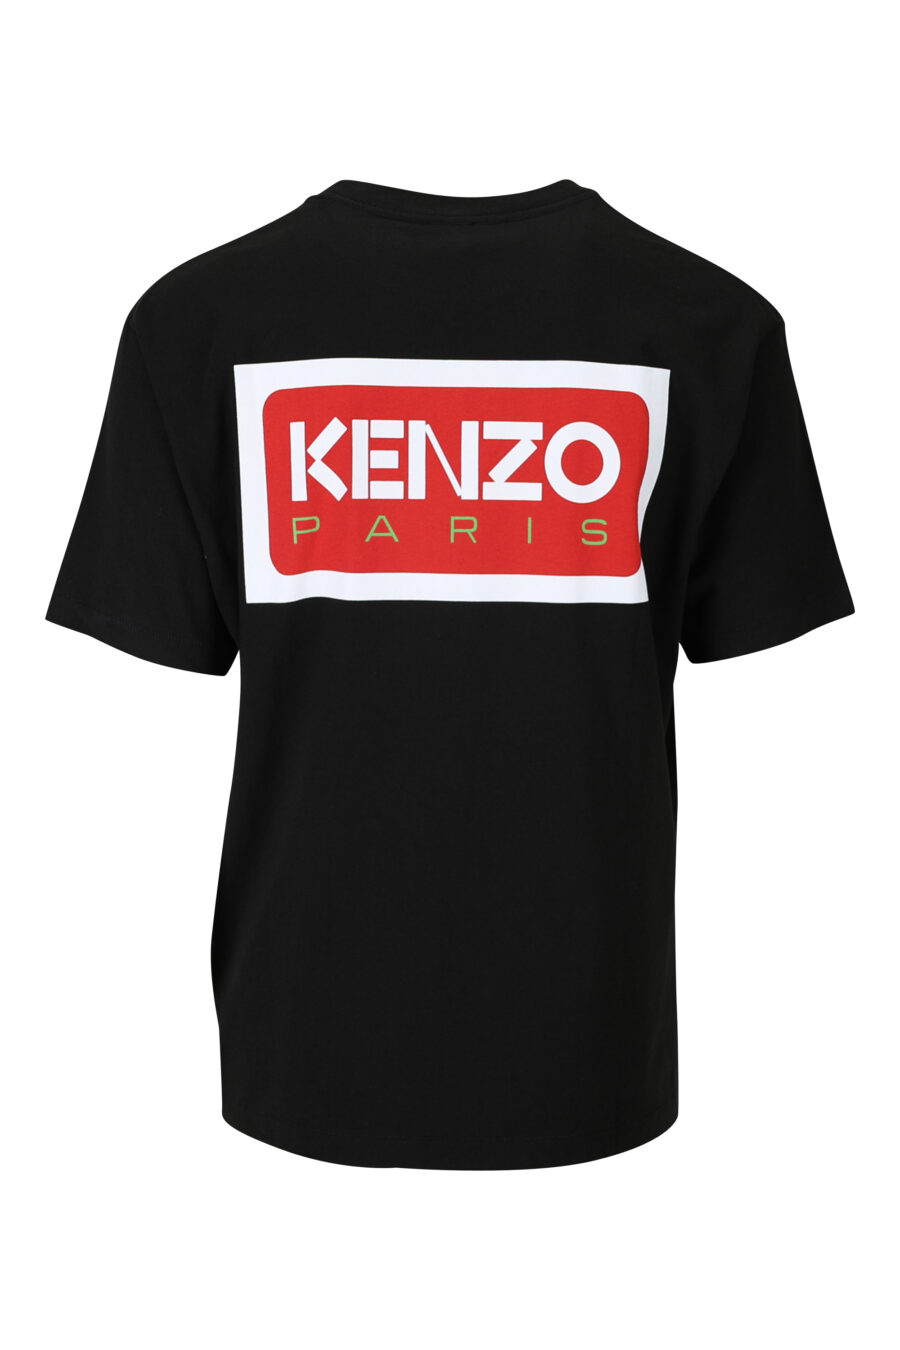 T-shirt schwarz mit kleinem Logo "kenzo paris" - 3612230542990 1